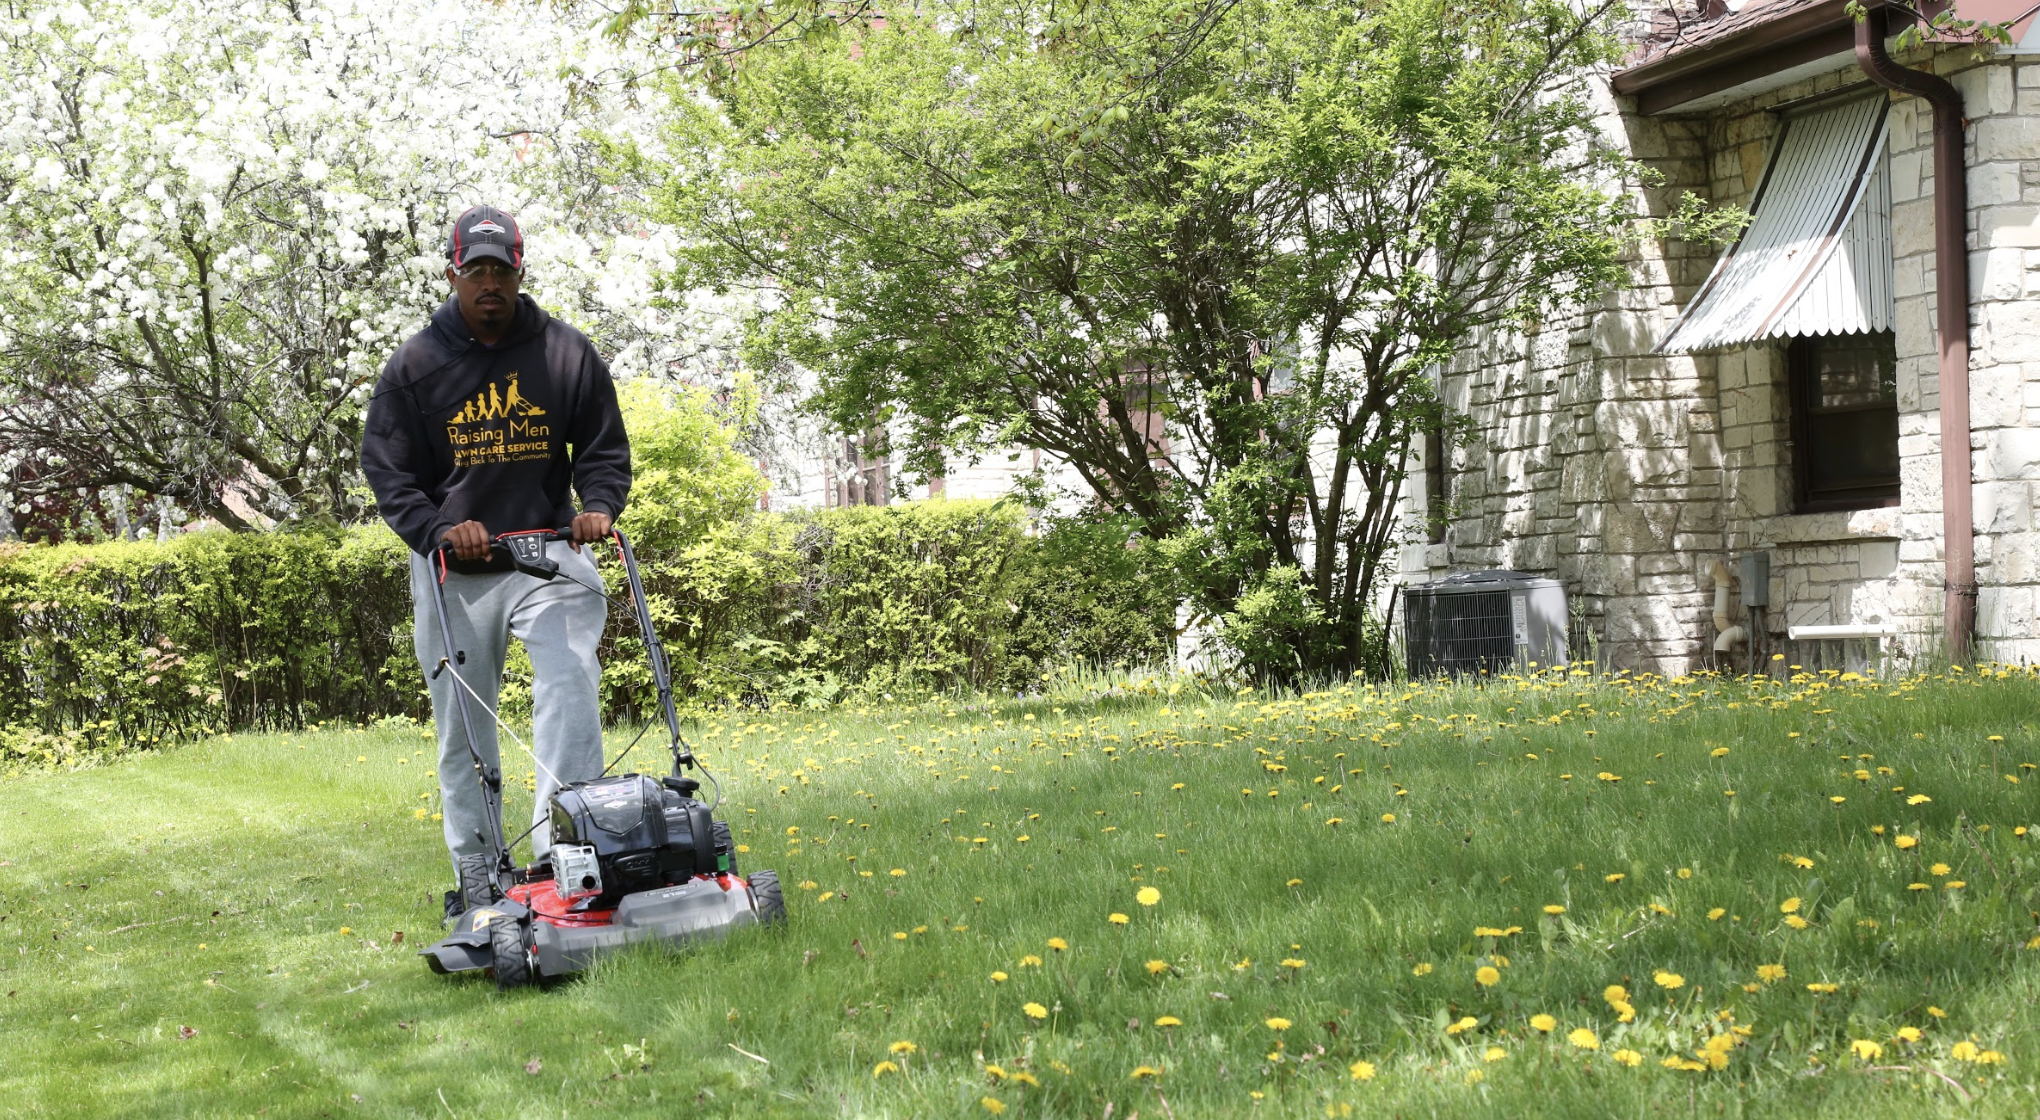 men's lawn mower